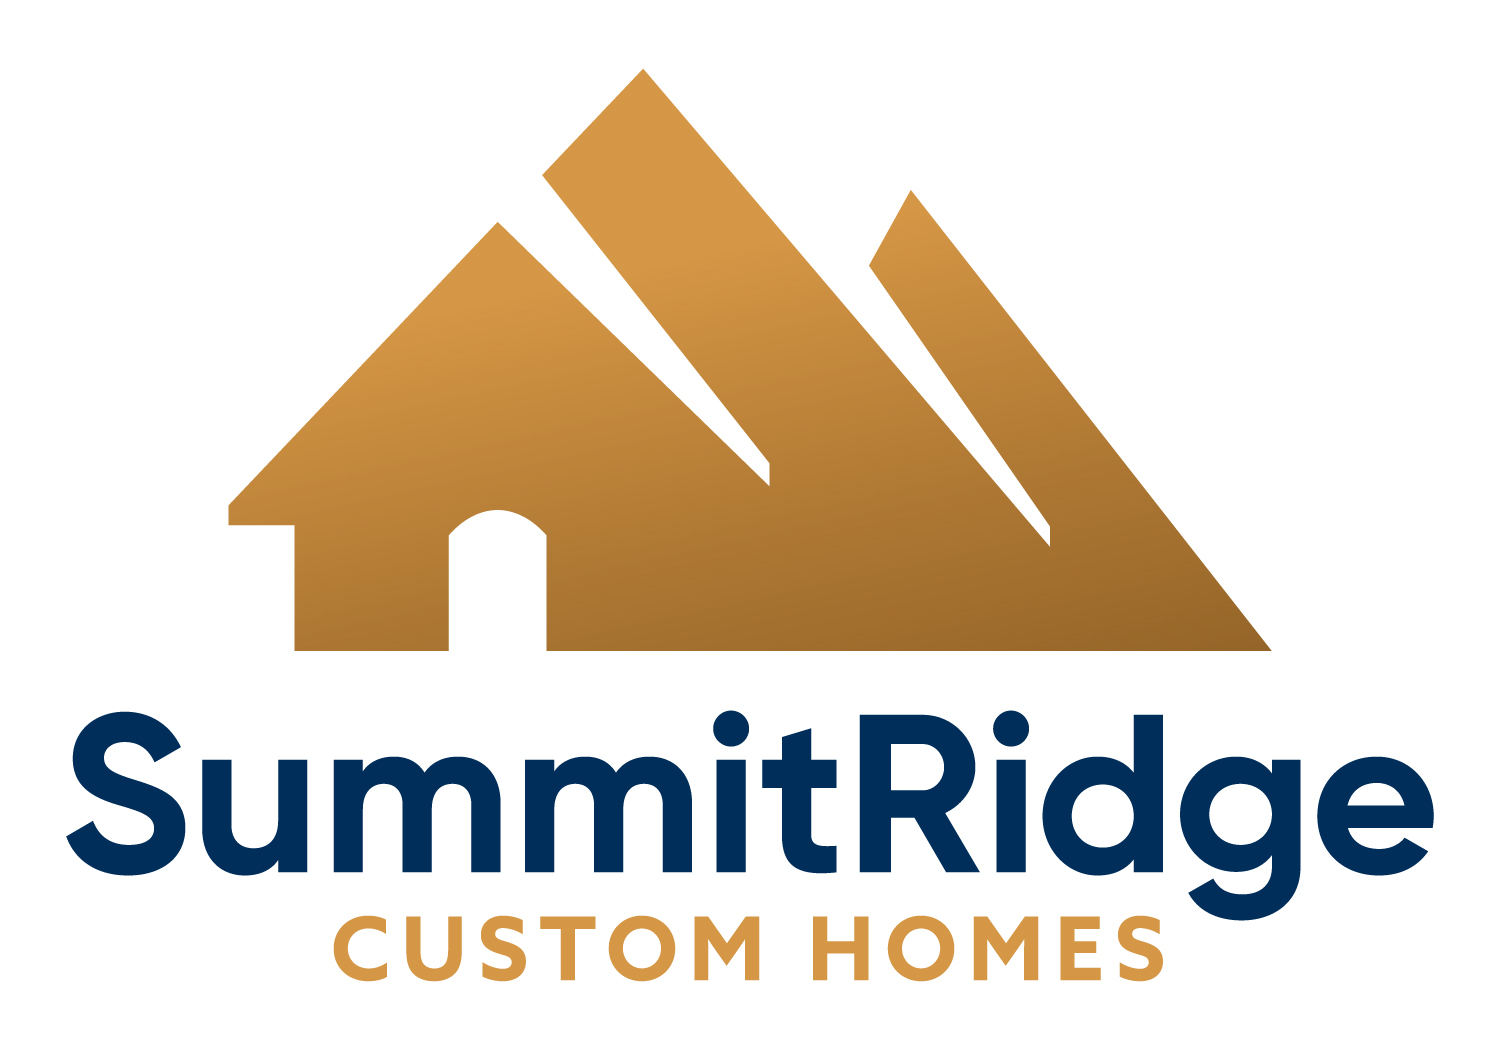 SummitRidge Custom Homes company logo